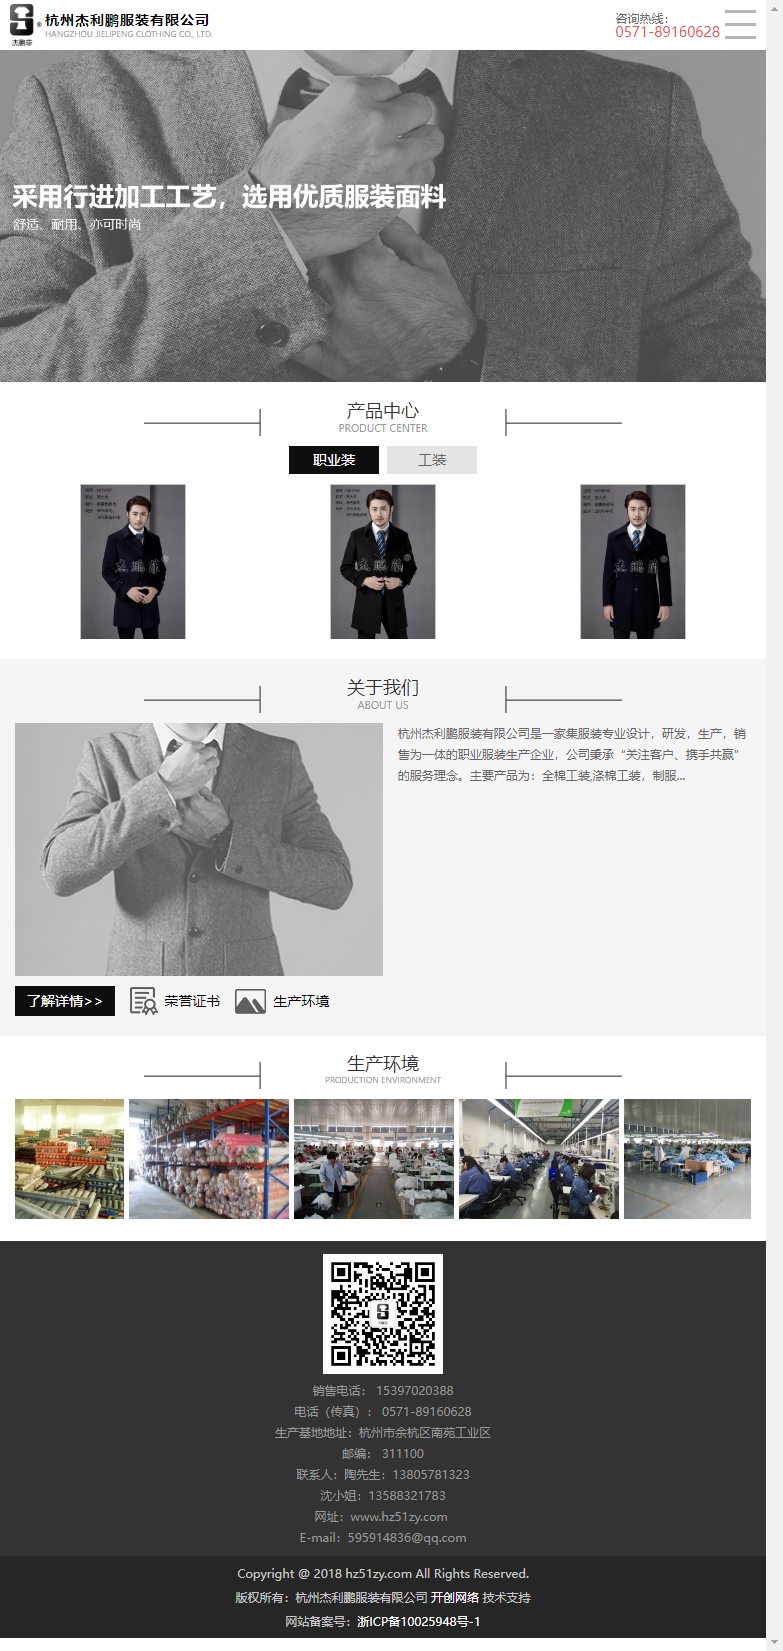 杭州杰利鹏服装有限公司网站案例